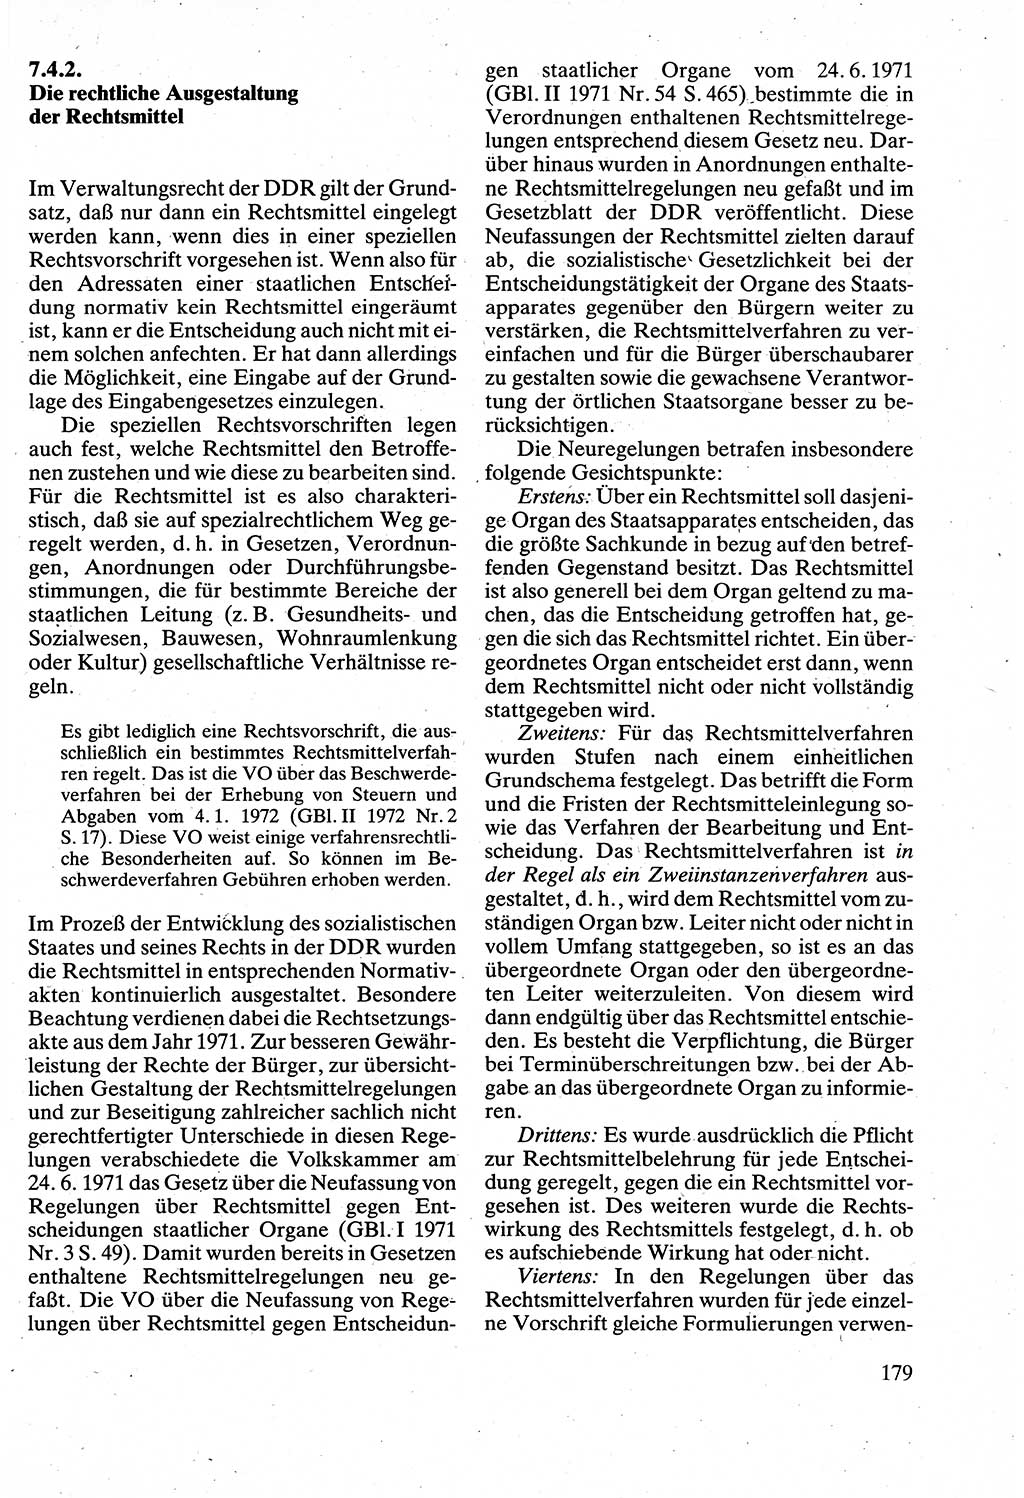 Verwaltungsrecht [Deutsche Demokratische Republik (DDR)], Lehrbuch 1988, Seite 179 (Verw.-R. DDR Lb. 1988, S. 179)